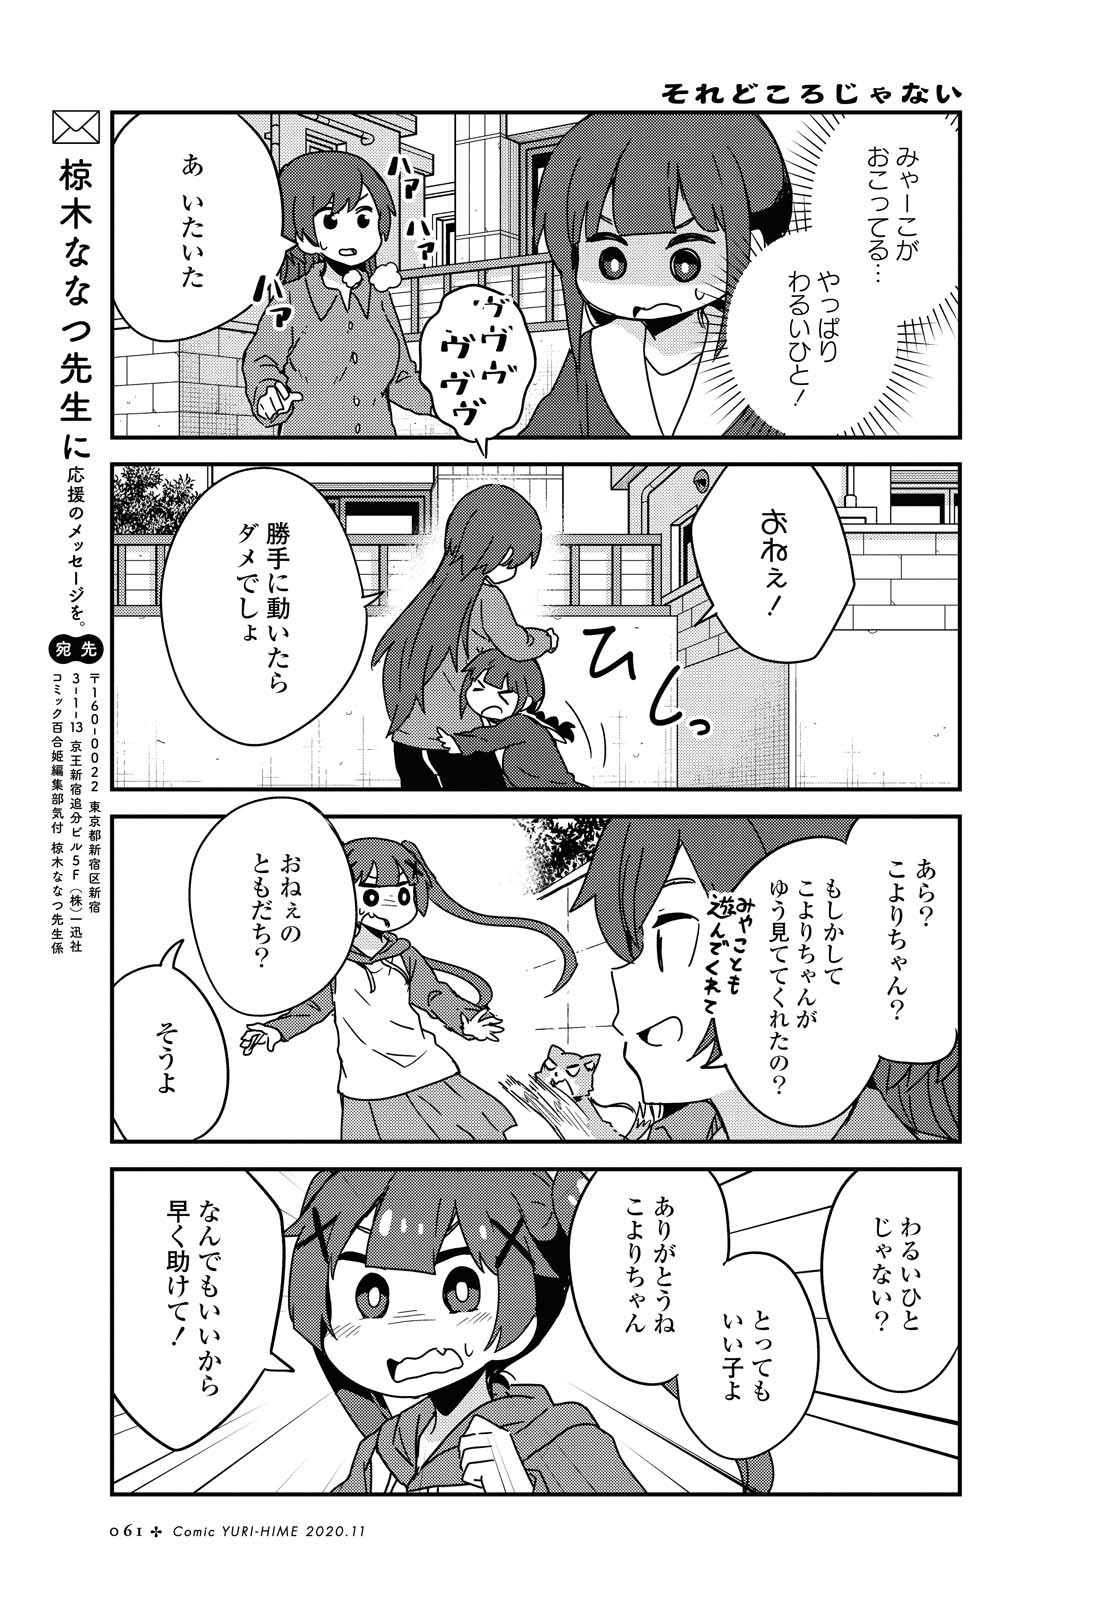 Watashi ni Tenshi ga Maiorita! - Chapter 71 - Page 15